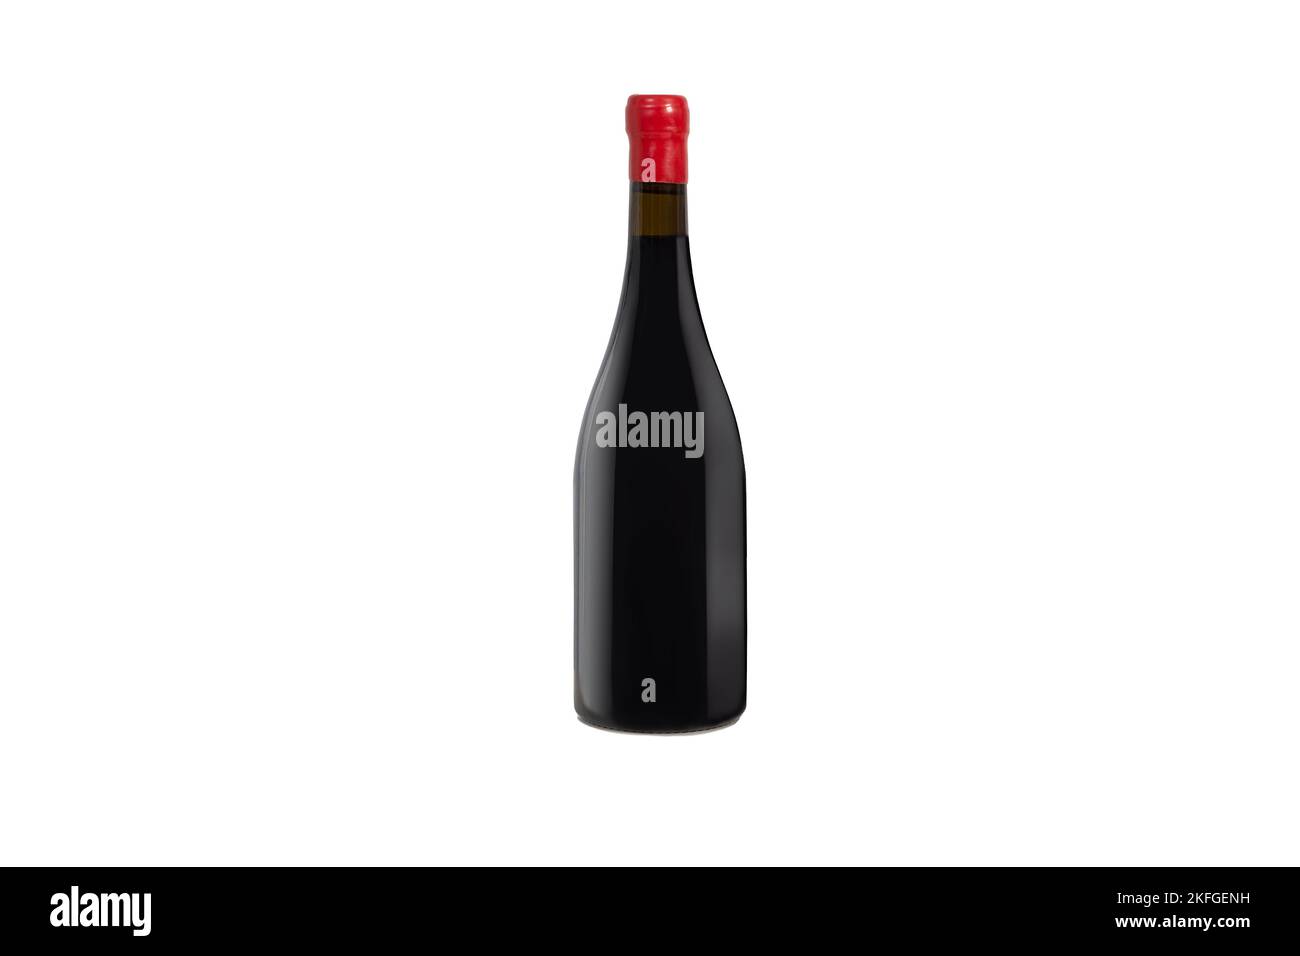 Isolierte Flasche Wein oder Champagner mit einem roten Verschluss. Stockfoto